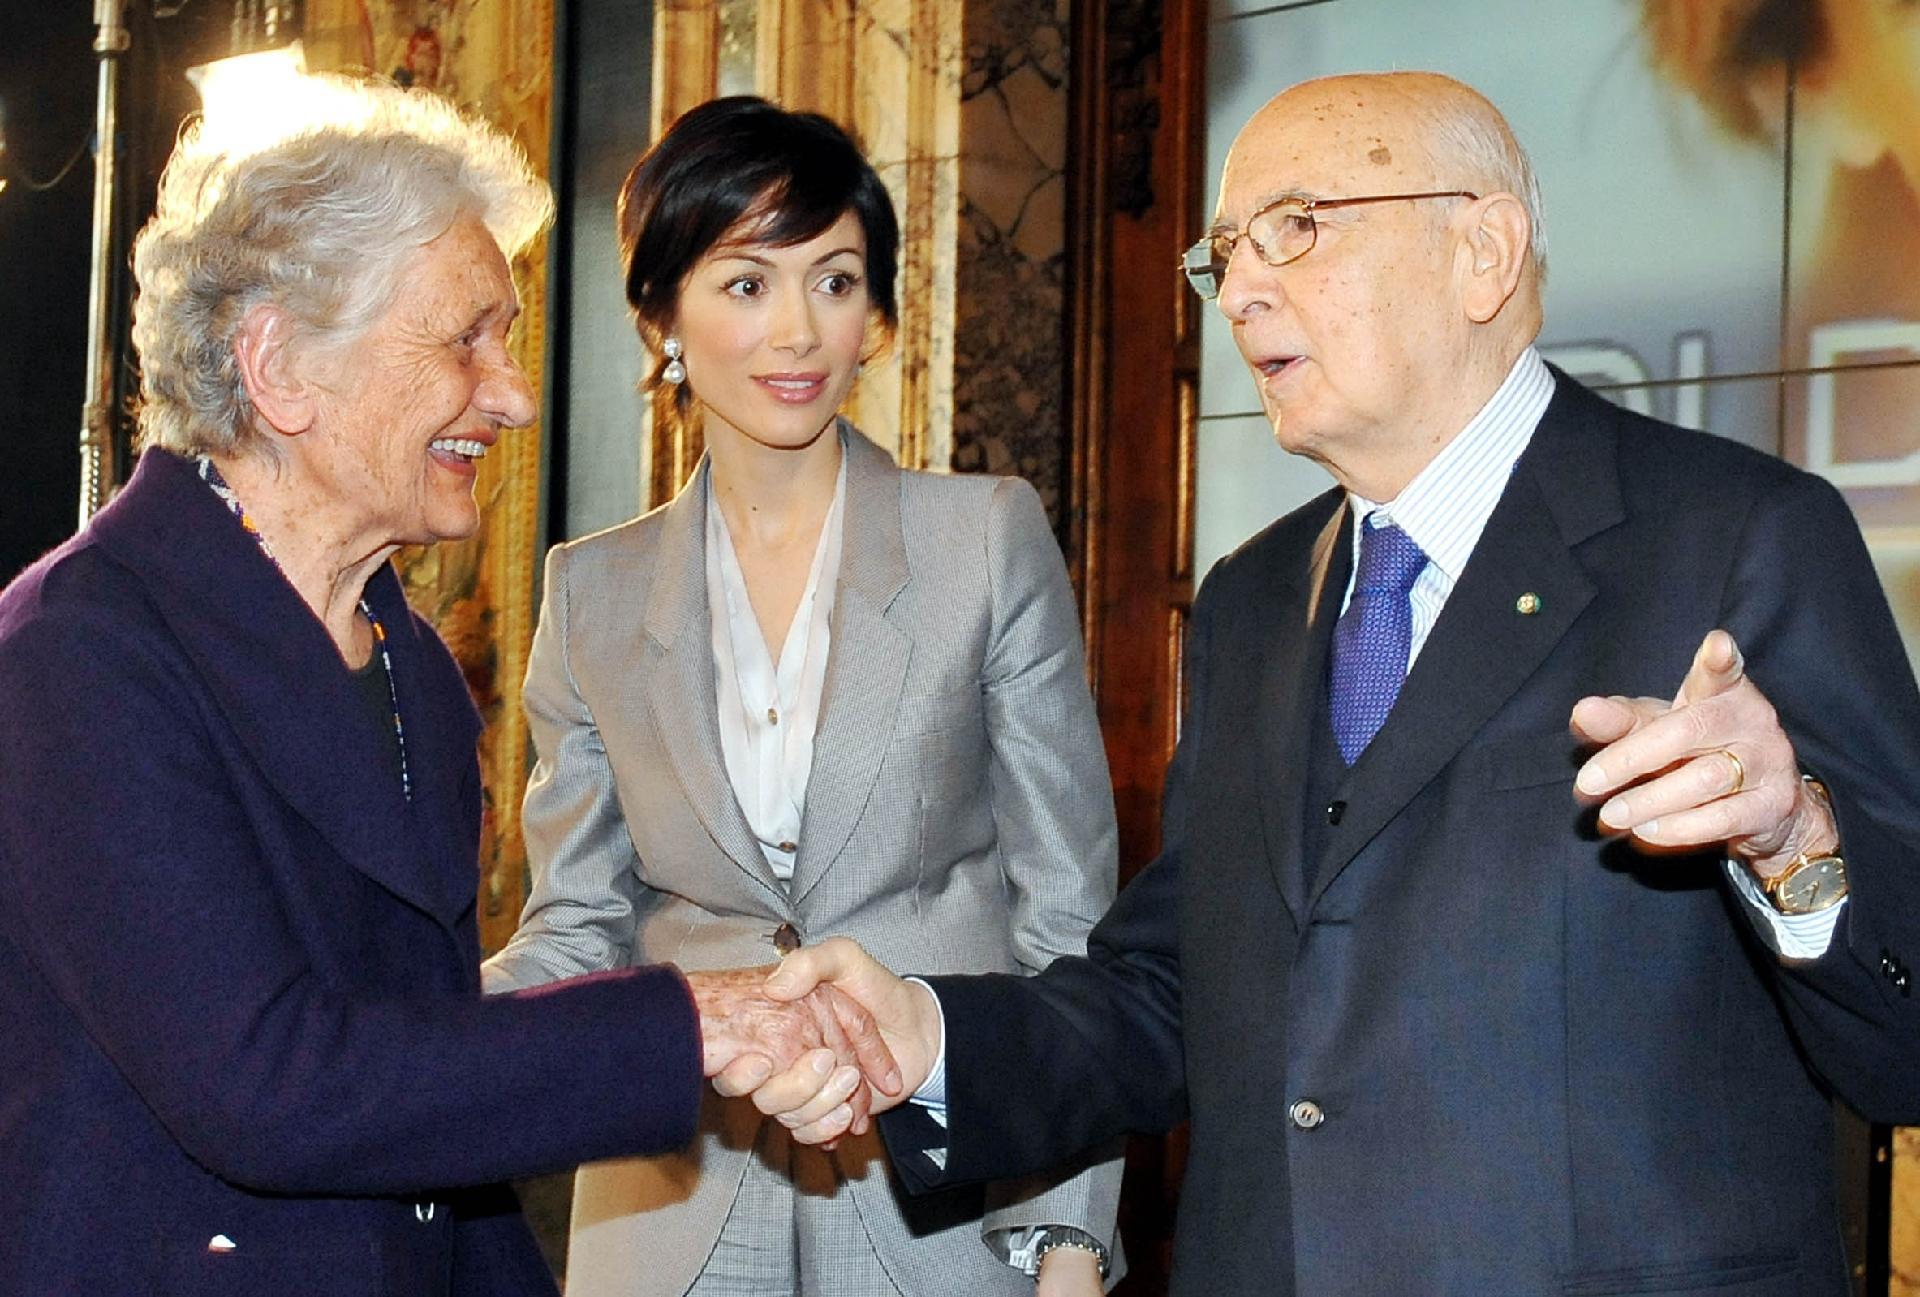 Il Presidente Giorgio Napolitano con il Grande Ufficiale Elena Gianini Belotti e il Ministro Carfagna in occasione della celebrazione della Giornata Internazionale della Donna